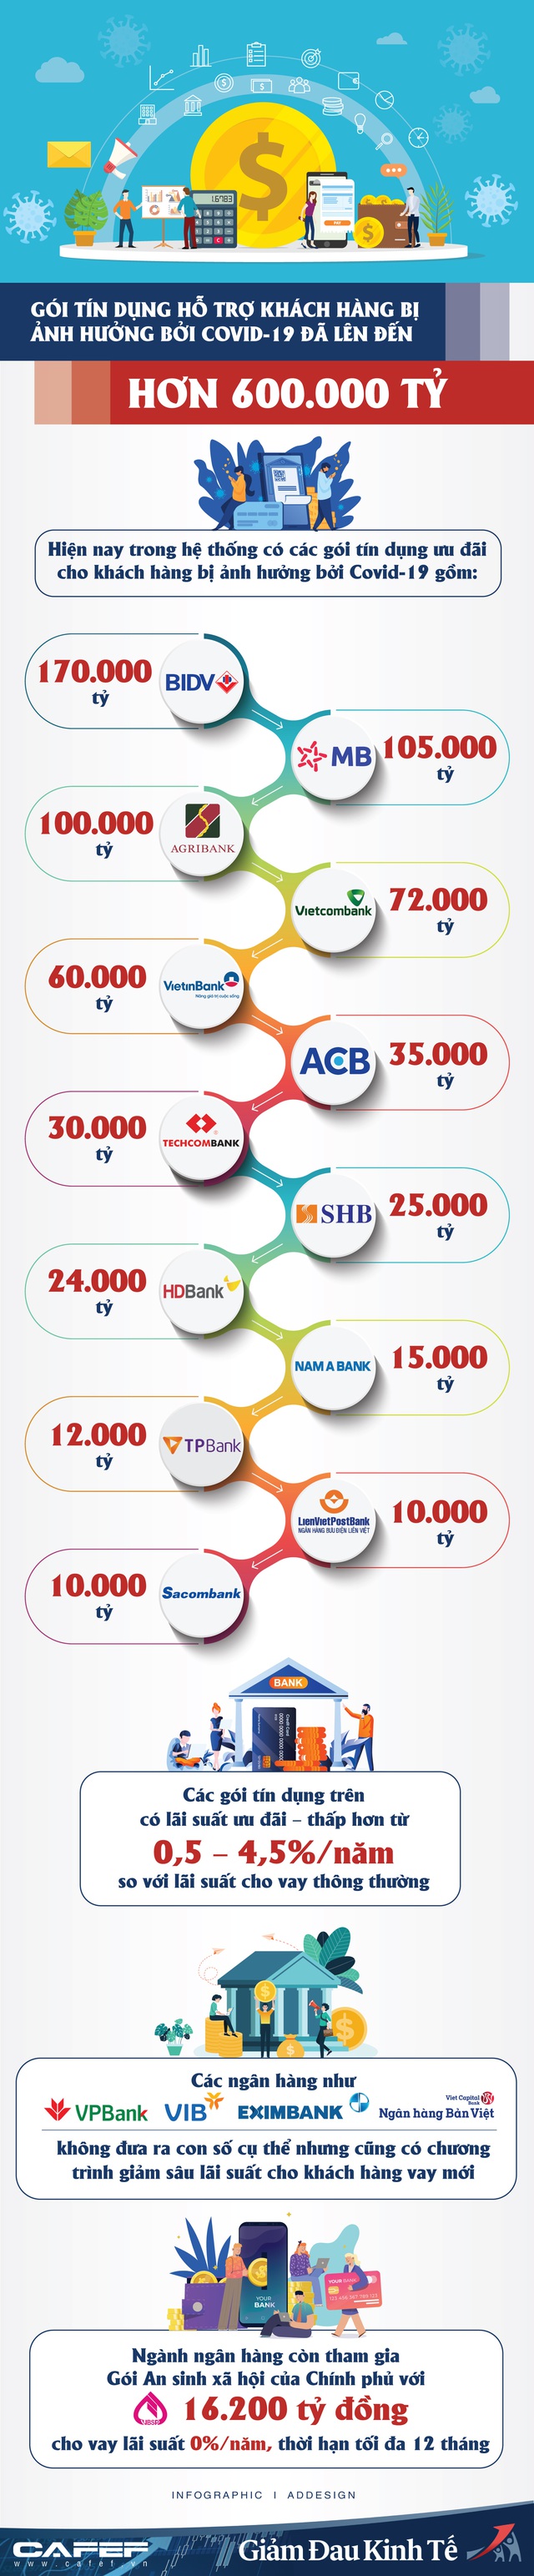 Infographic: Điểm danh các ngân hàng đang tham gia Gói tín dụng hơn 600.000 tỷ hỗ trợ khách hàng bị ảnh hưởng bởi Covid-19 - Ảnh 1.